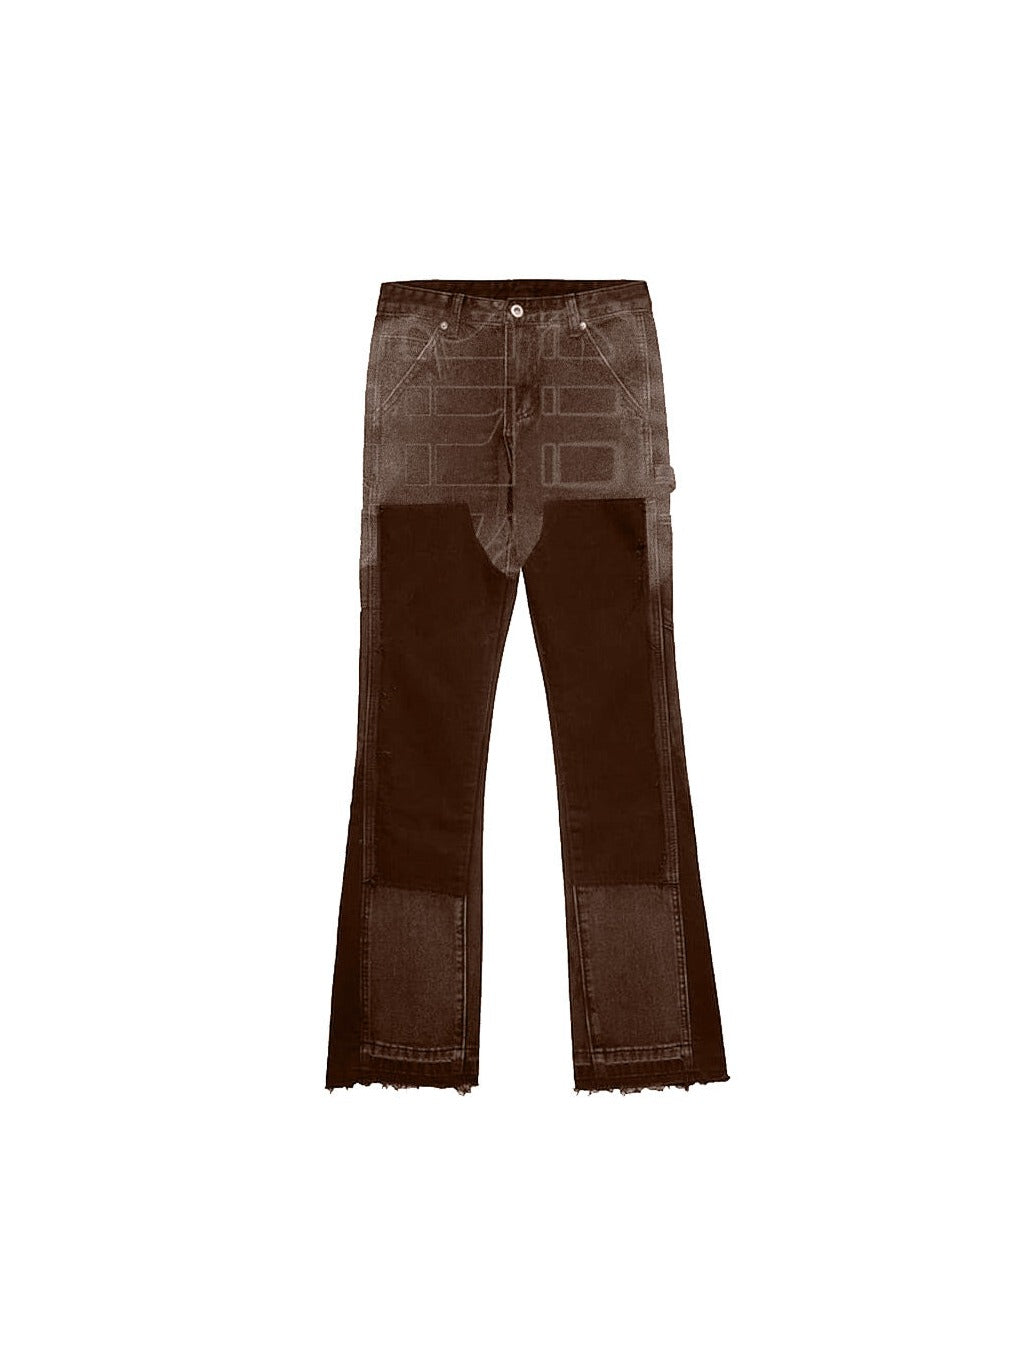 Sole et. Al Metro Flared Carpenter Denim Jeans : brun